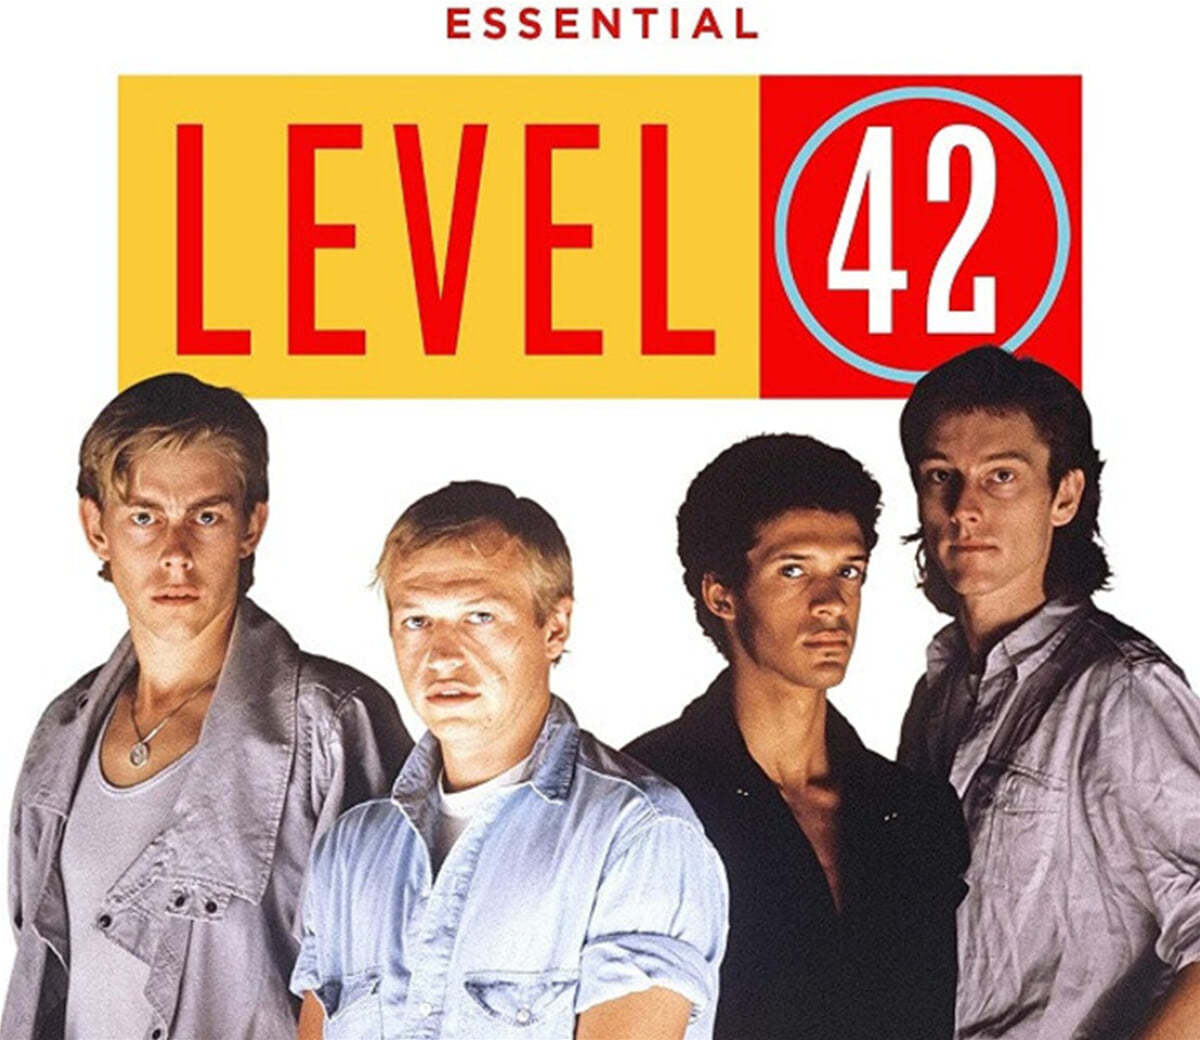 Level 42 (레벨 42) - Essential Level 42 